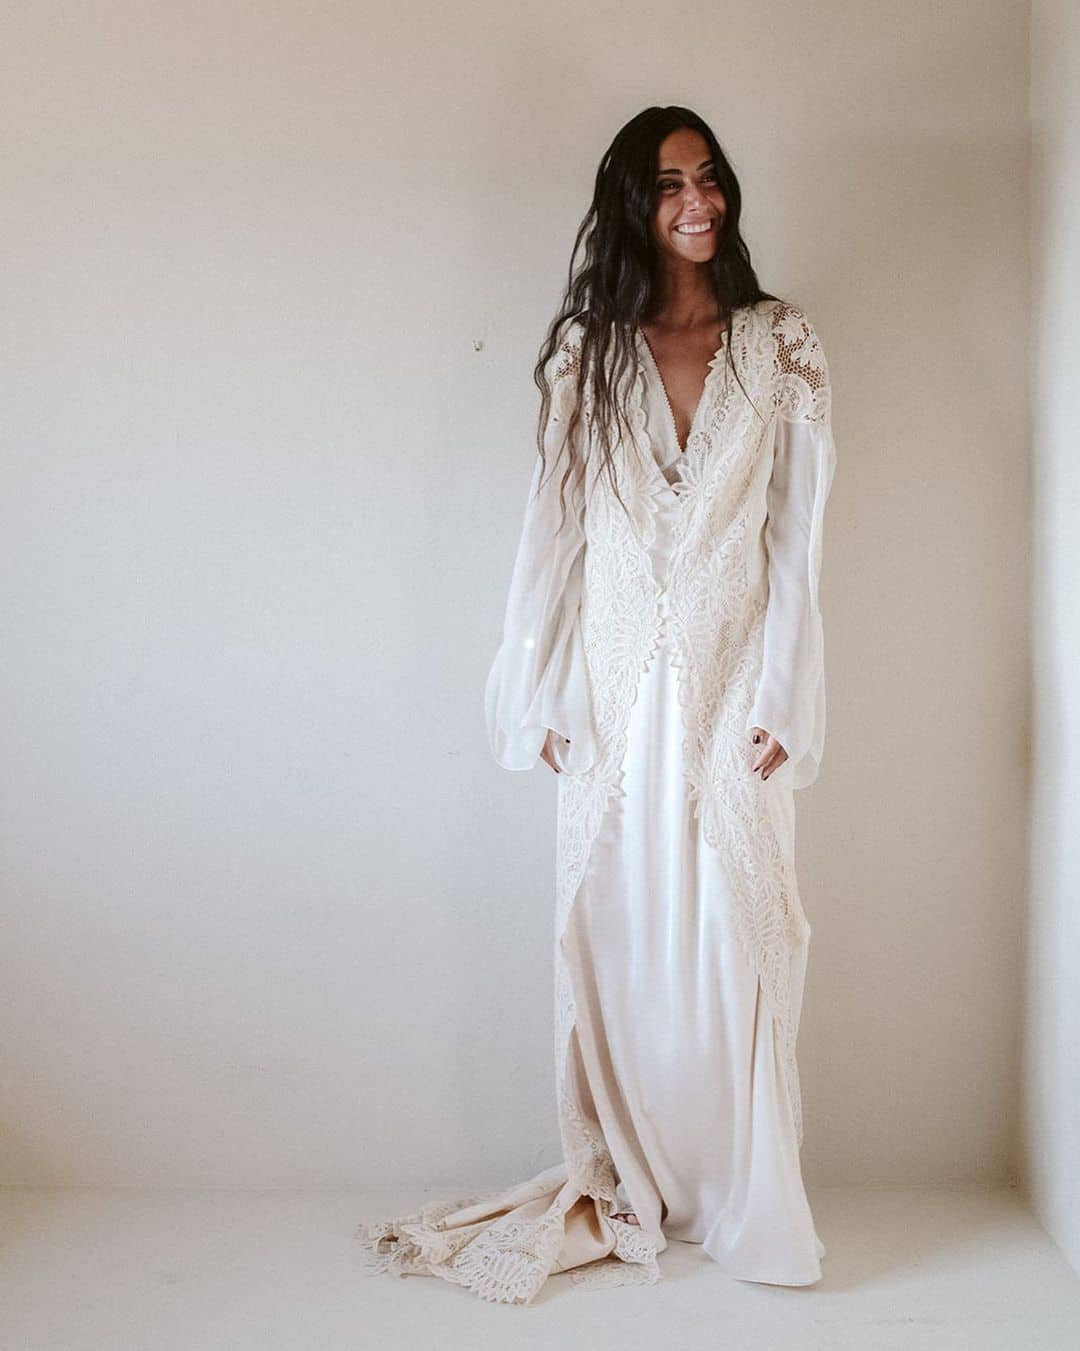 Claudia Llagosterá posando con un vestido de novia diseñado por ella misma.